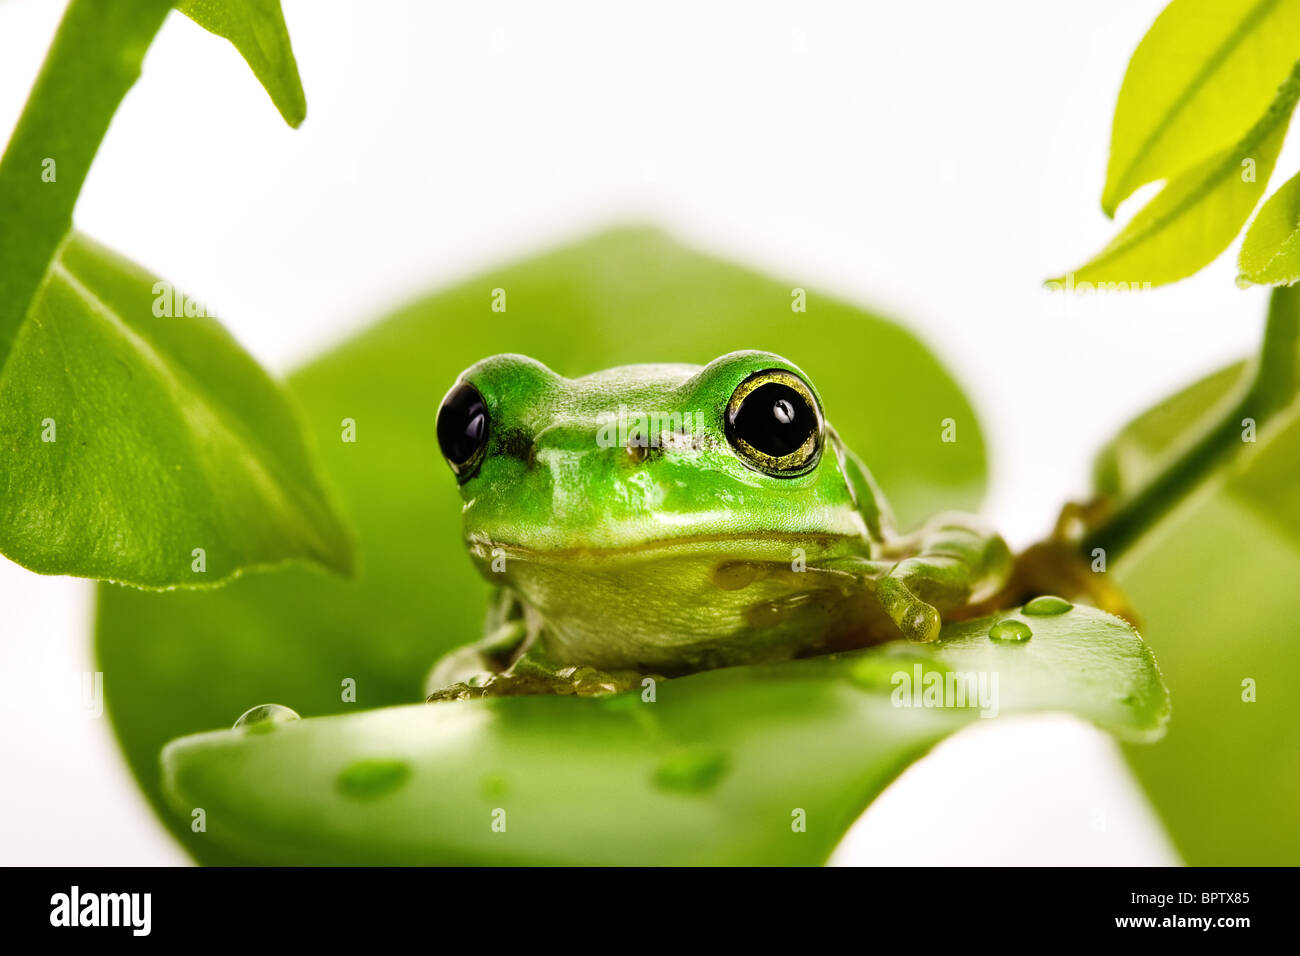 La rana arborícola verde pequeña sentada sobre las hojas frescas Foto de stock